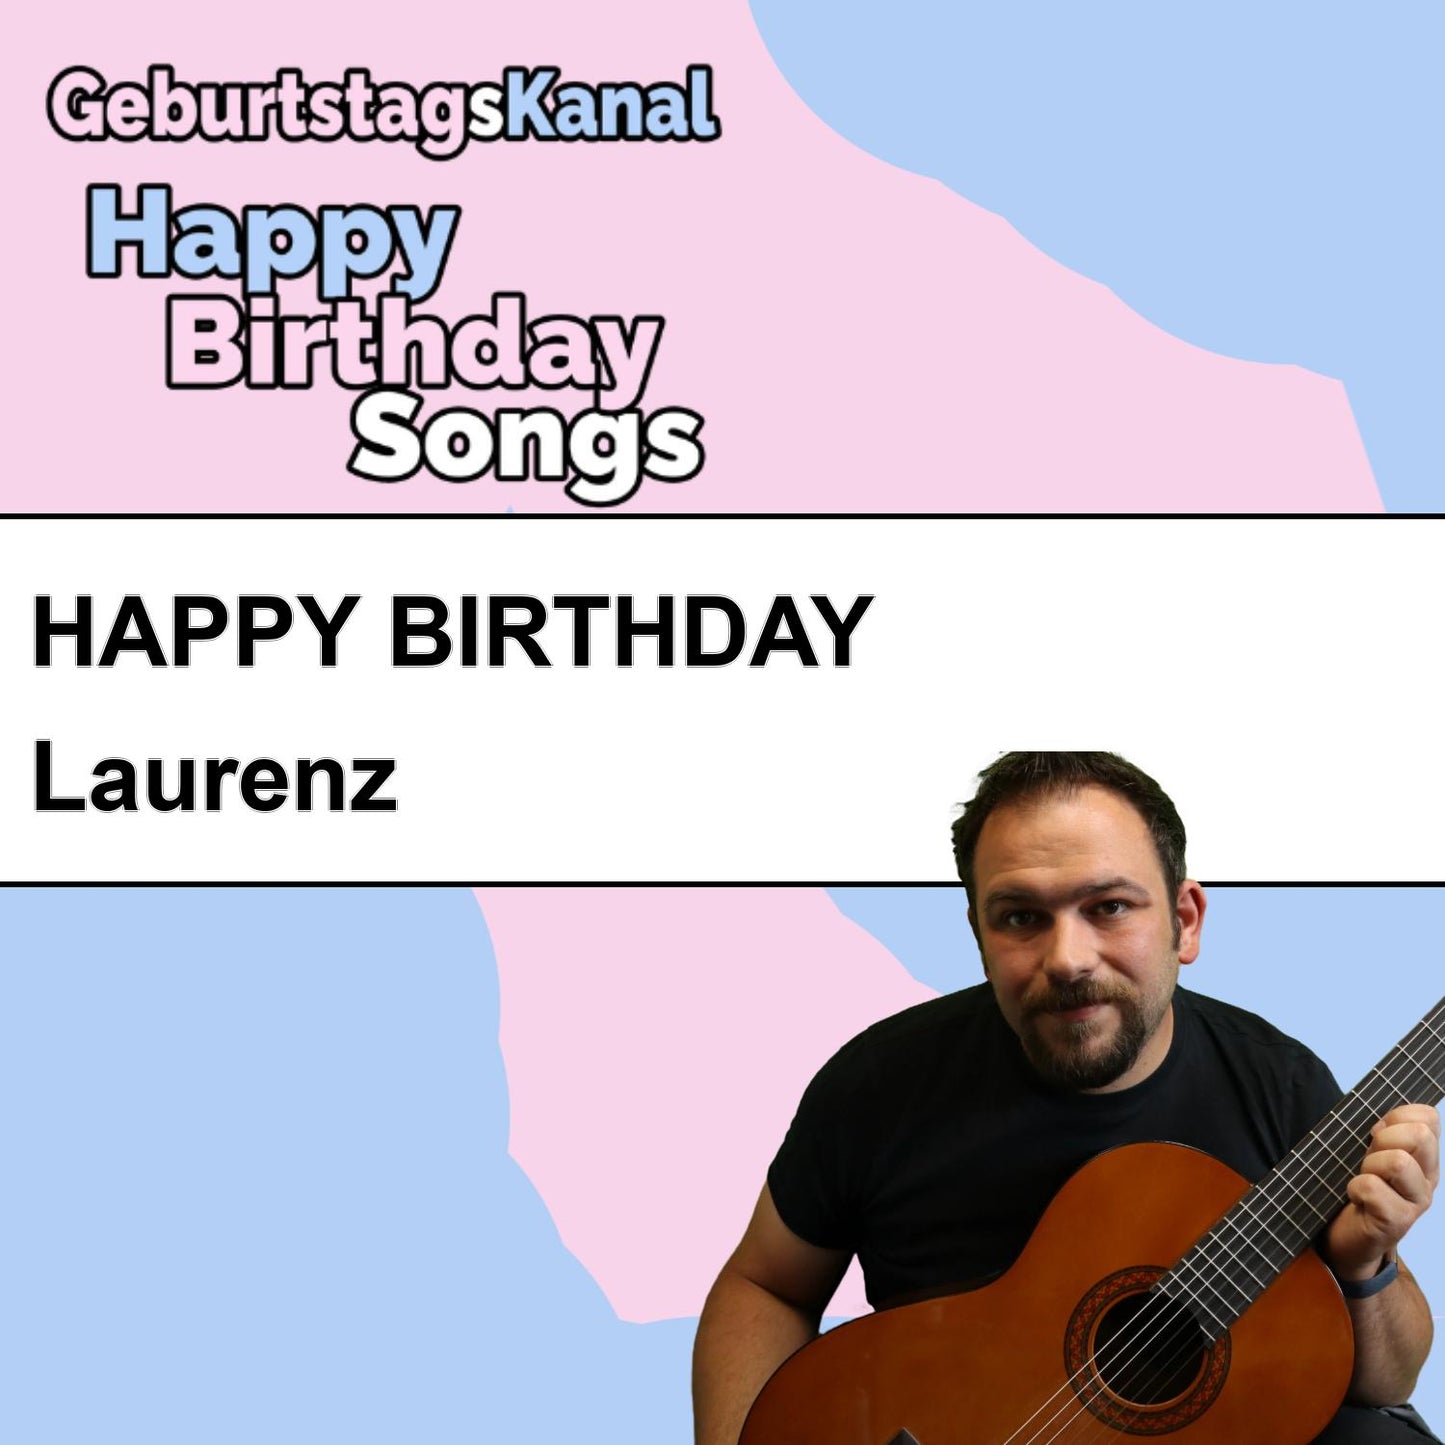 Produktbild Happy Birthday to you Laurenz mit Wunschgrußbotschaft